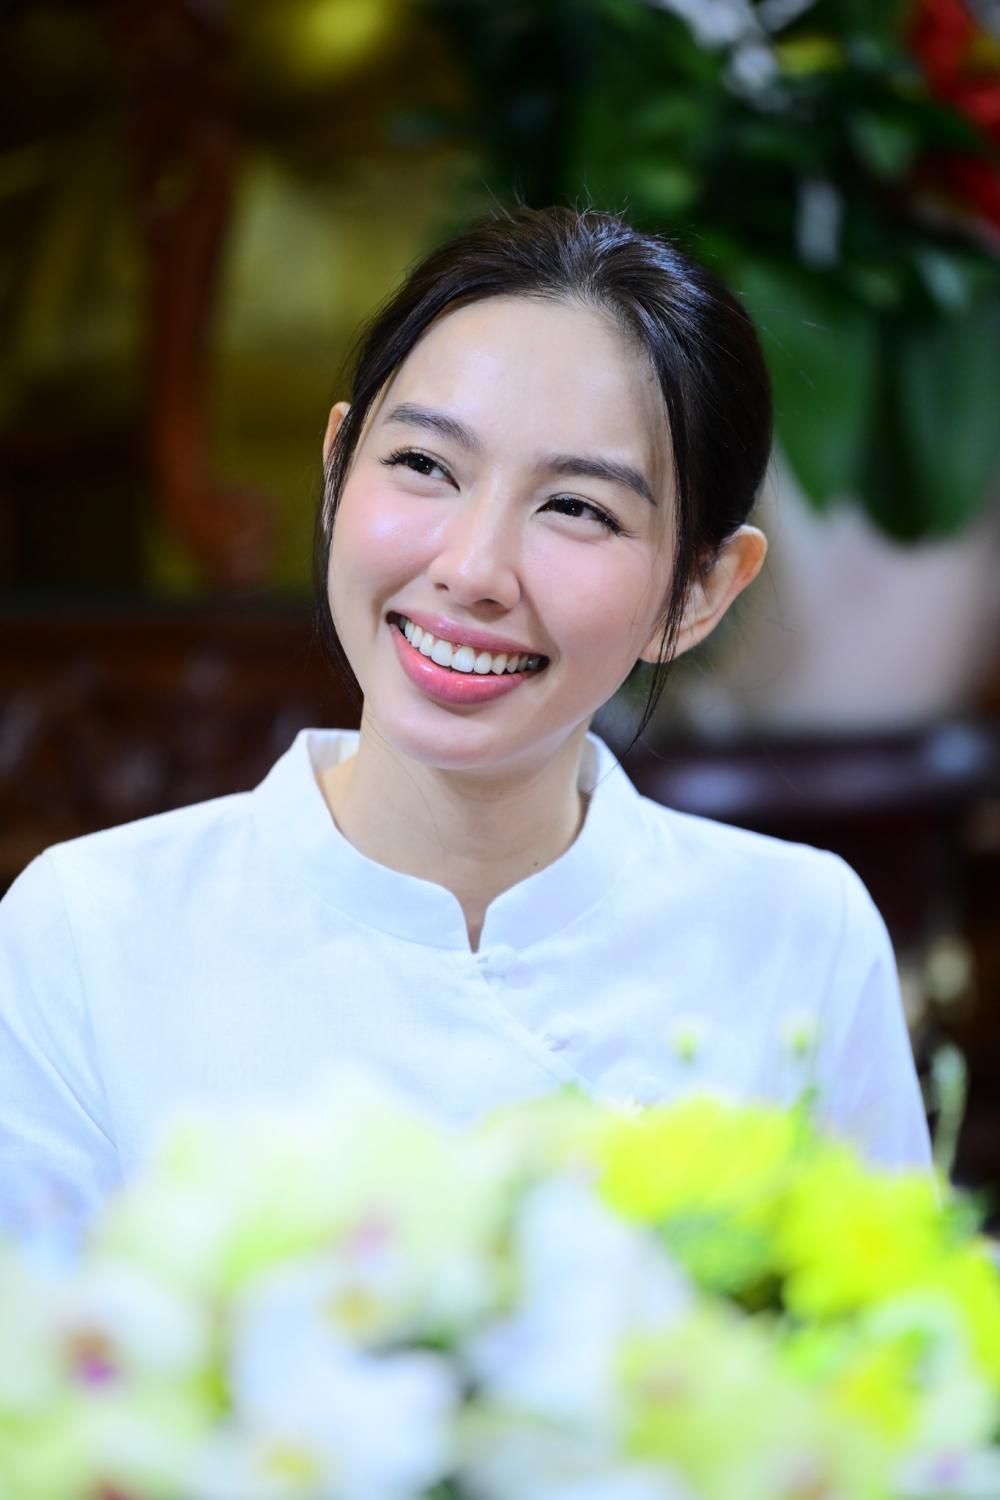 Hoa hậu Nguyễn Thúc Thùy Tiên - "Bông hoa" ngát hương làm đẹp cho đời